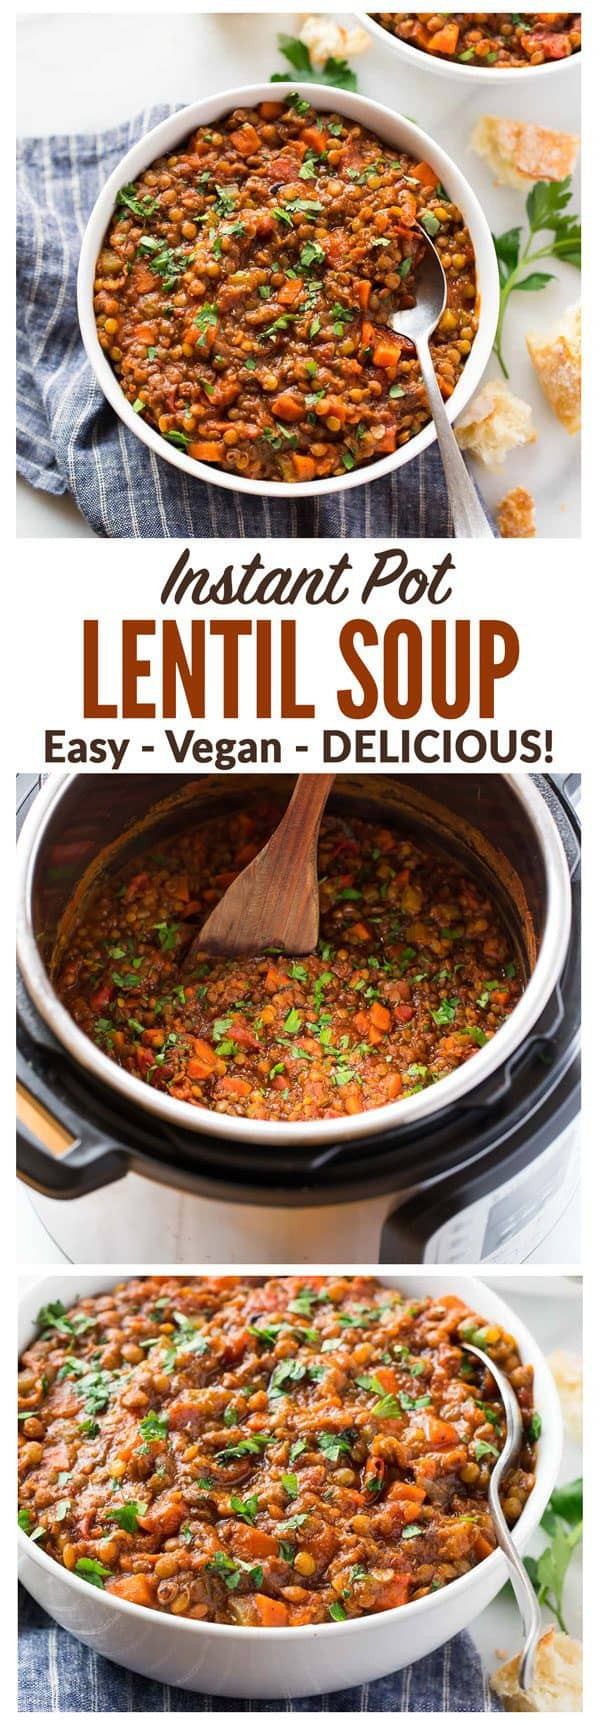 Easy Instant Pot Recipes Vegetarian
 Instant Pot Lentil Soup